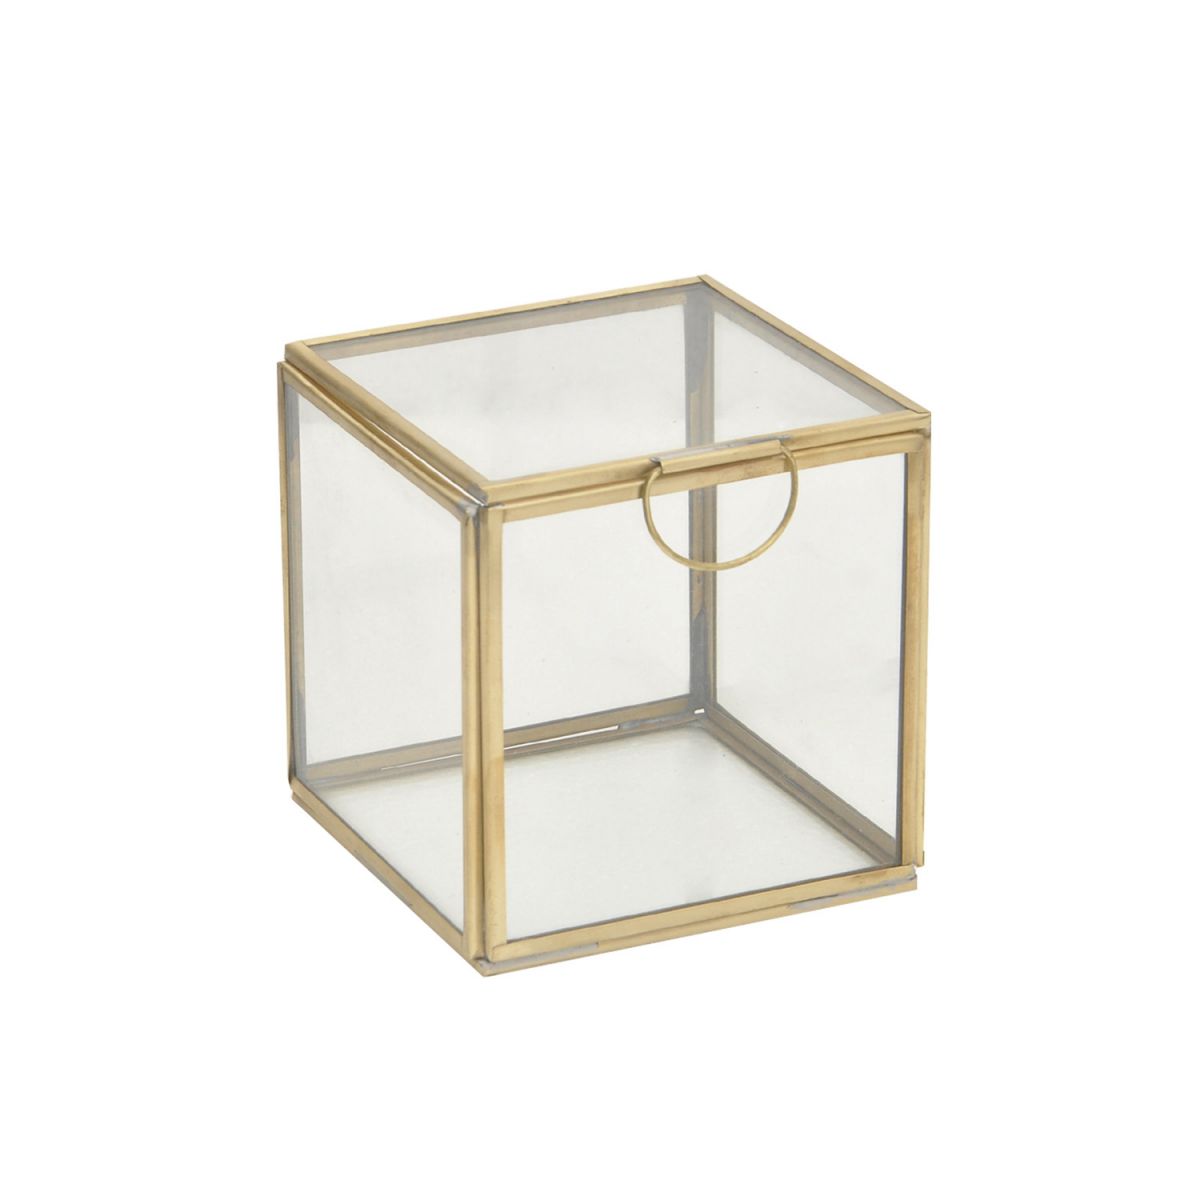 gastheer zuurgraad Nylon Decoratie doos glas goud tint met deksel 10x10x10cm — Houselabel